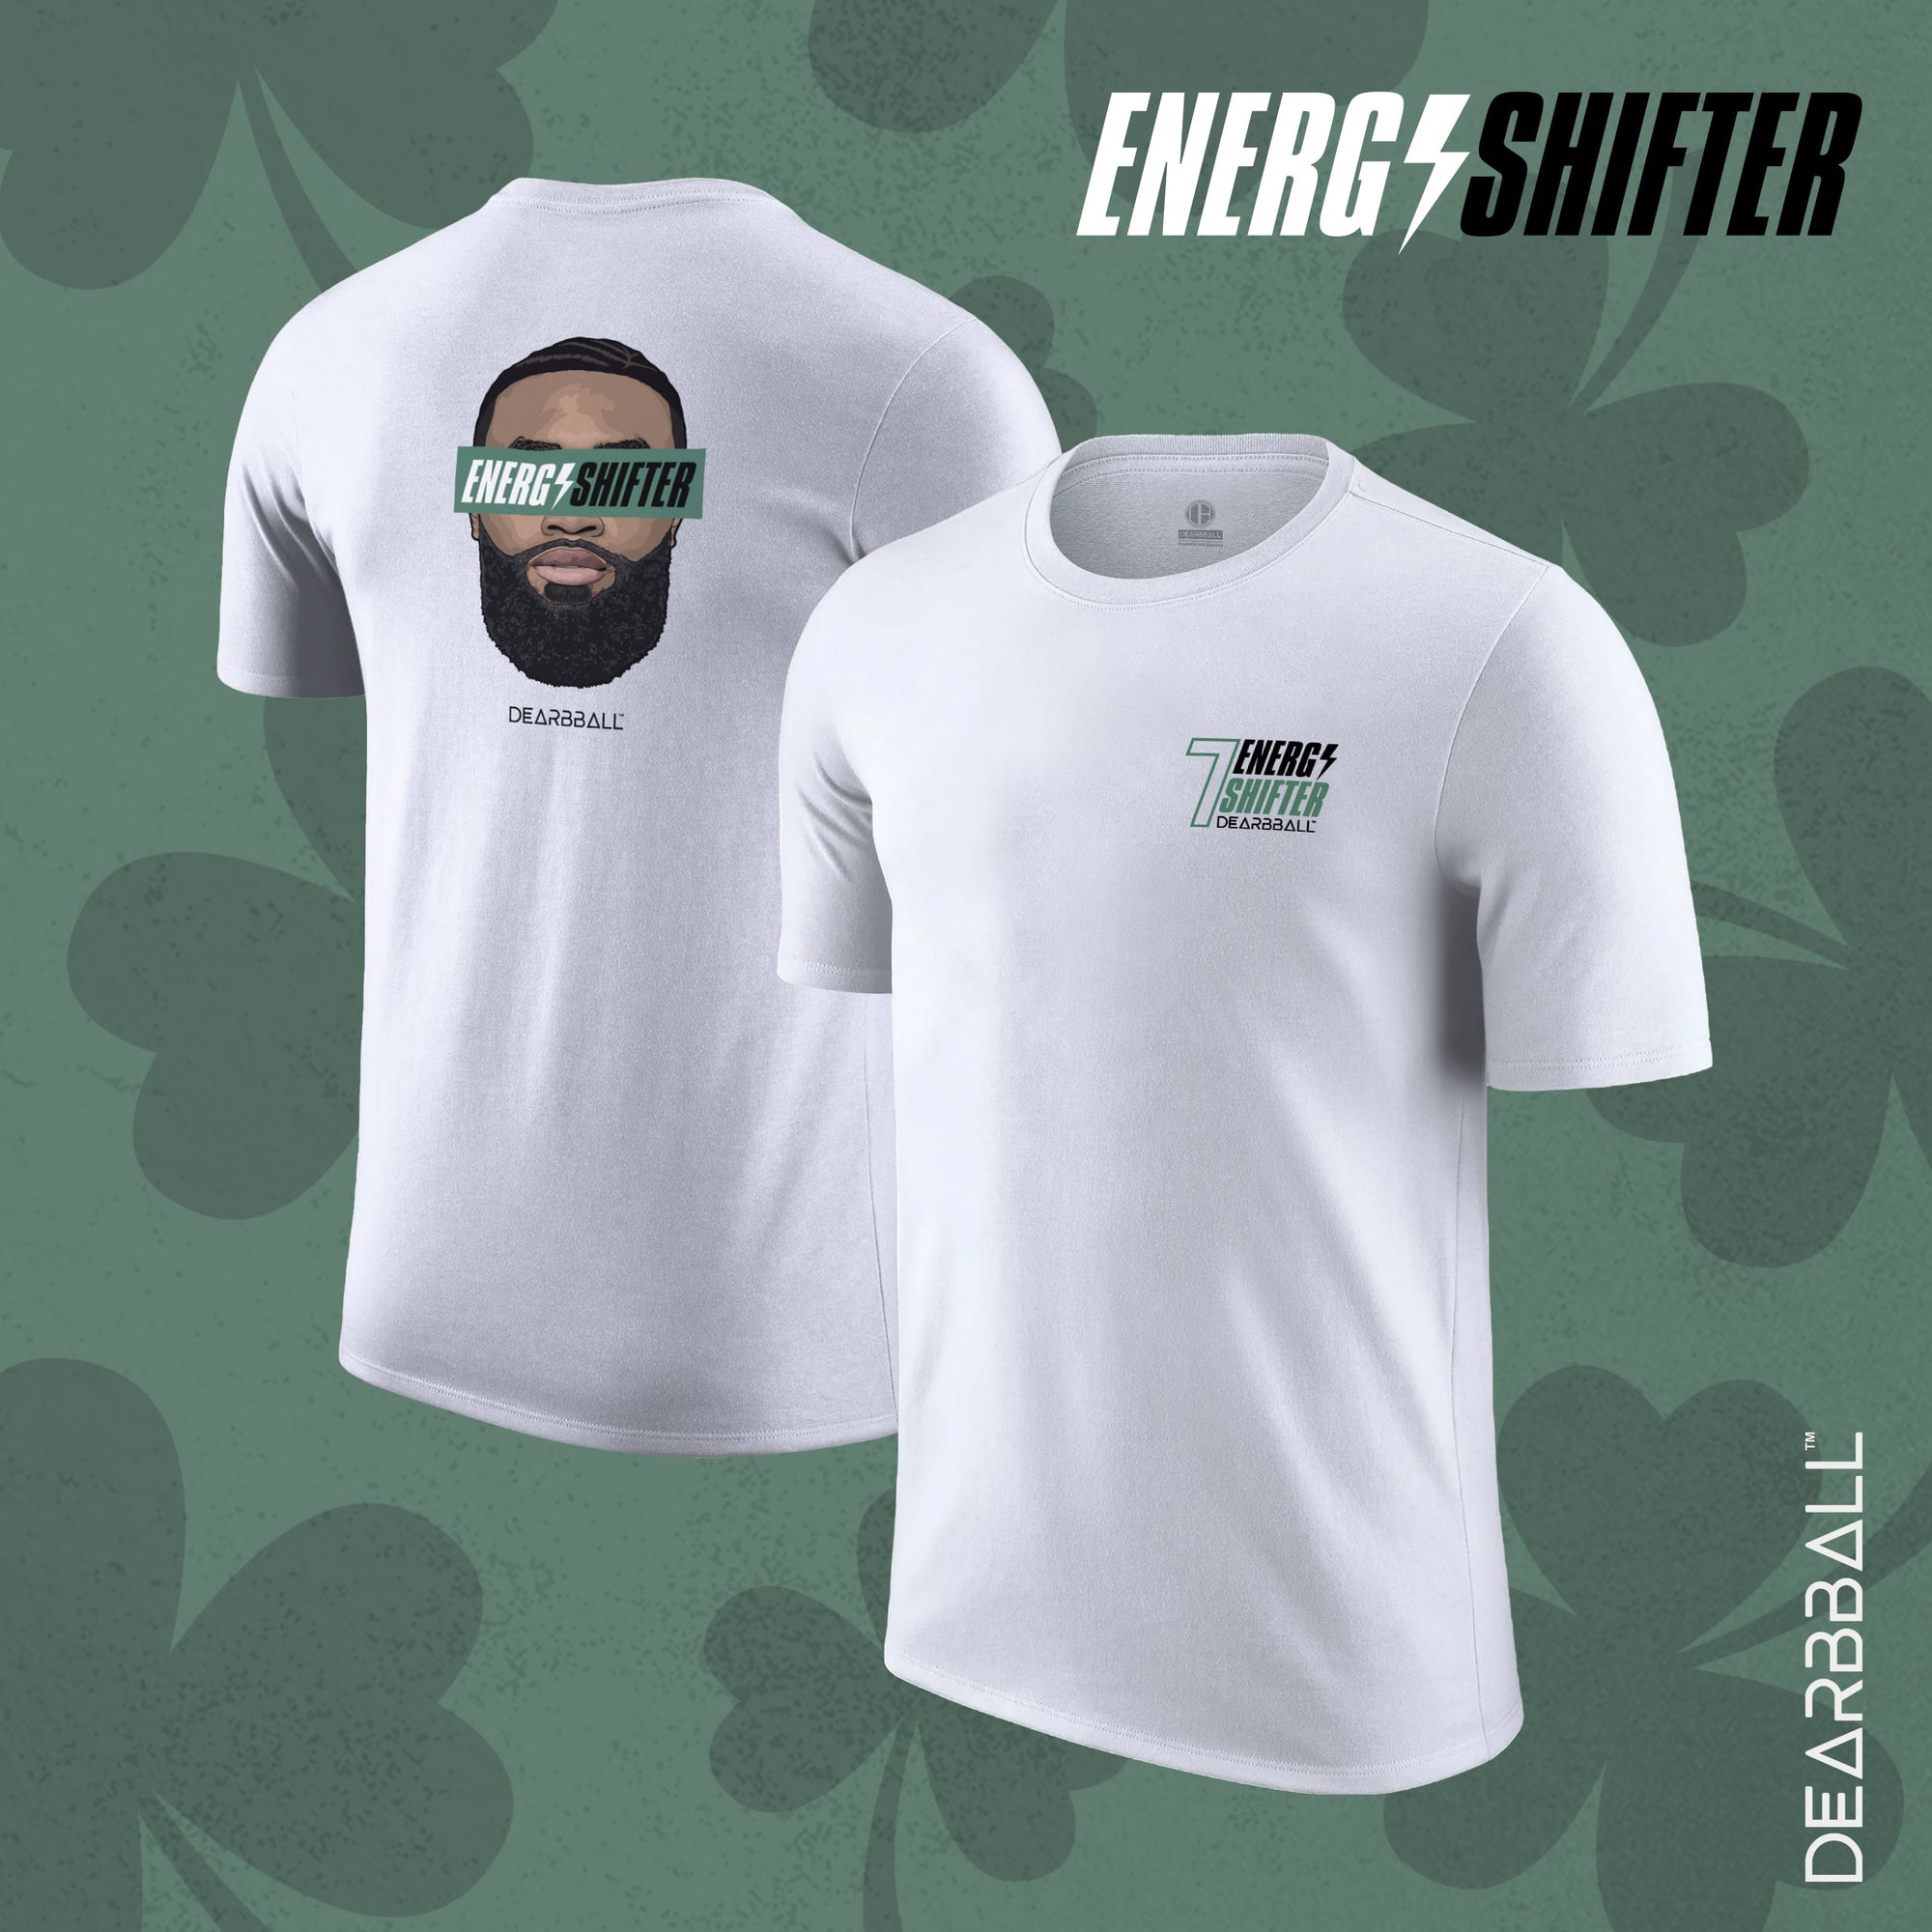 DearBBall Ensemble Short T-Shirt - ENERGY SHIFTER Finals Premium Black Edition